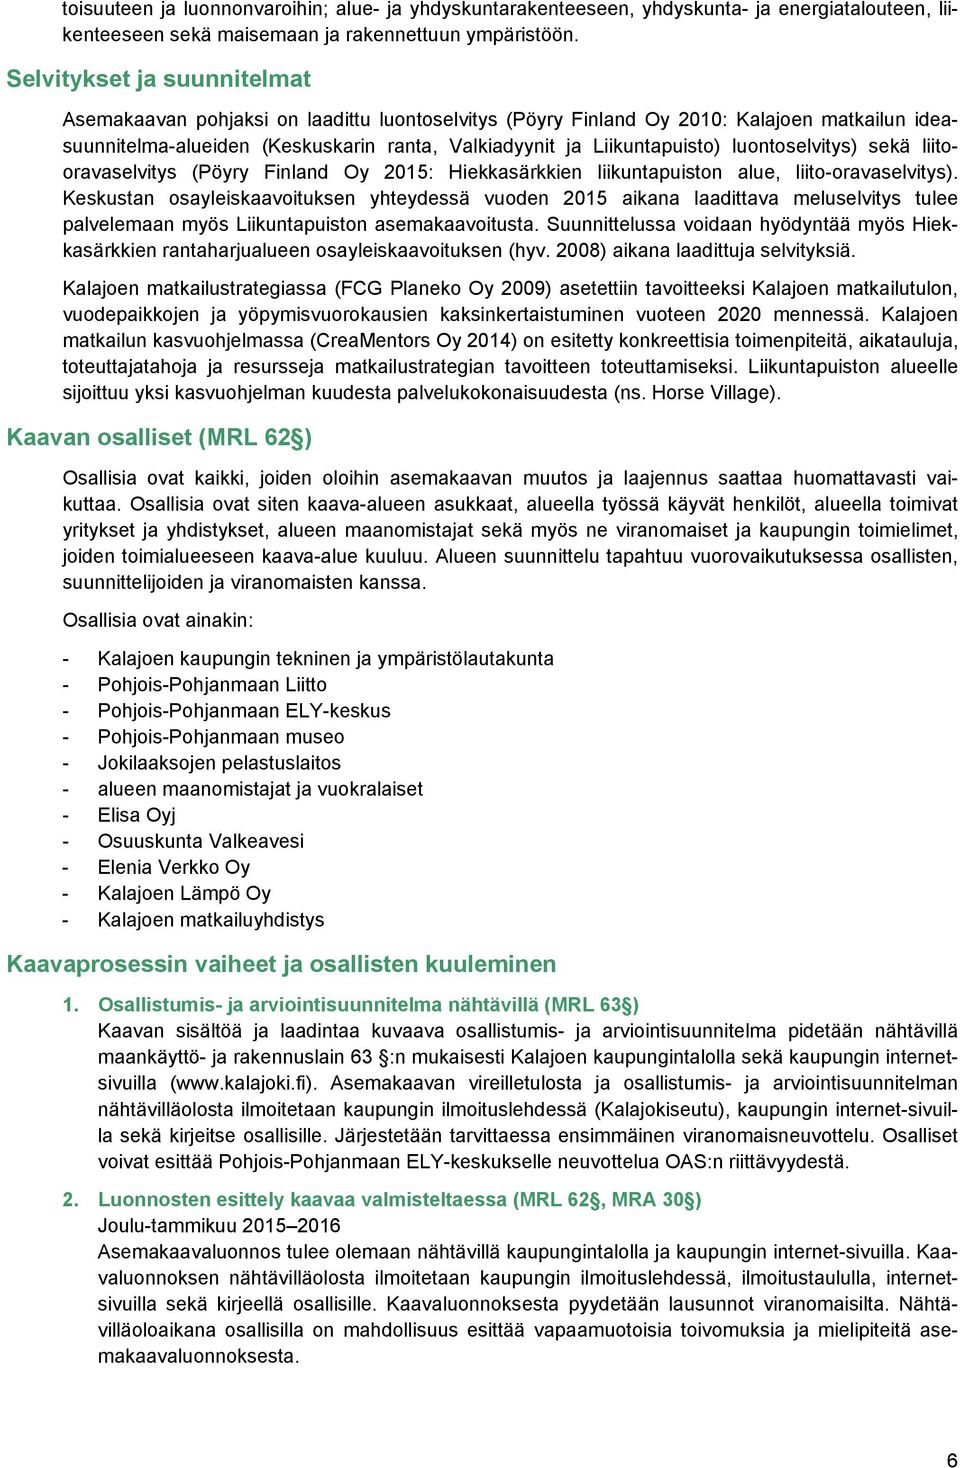 luontoselvitys) sekä liitooravaselvitys (Pöyry Finland Oy 2015: Hiekkasärkkien liikuntapuiston alue, liito-oravaselvitys).